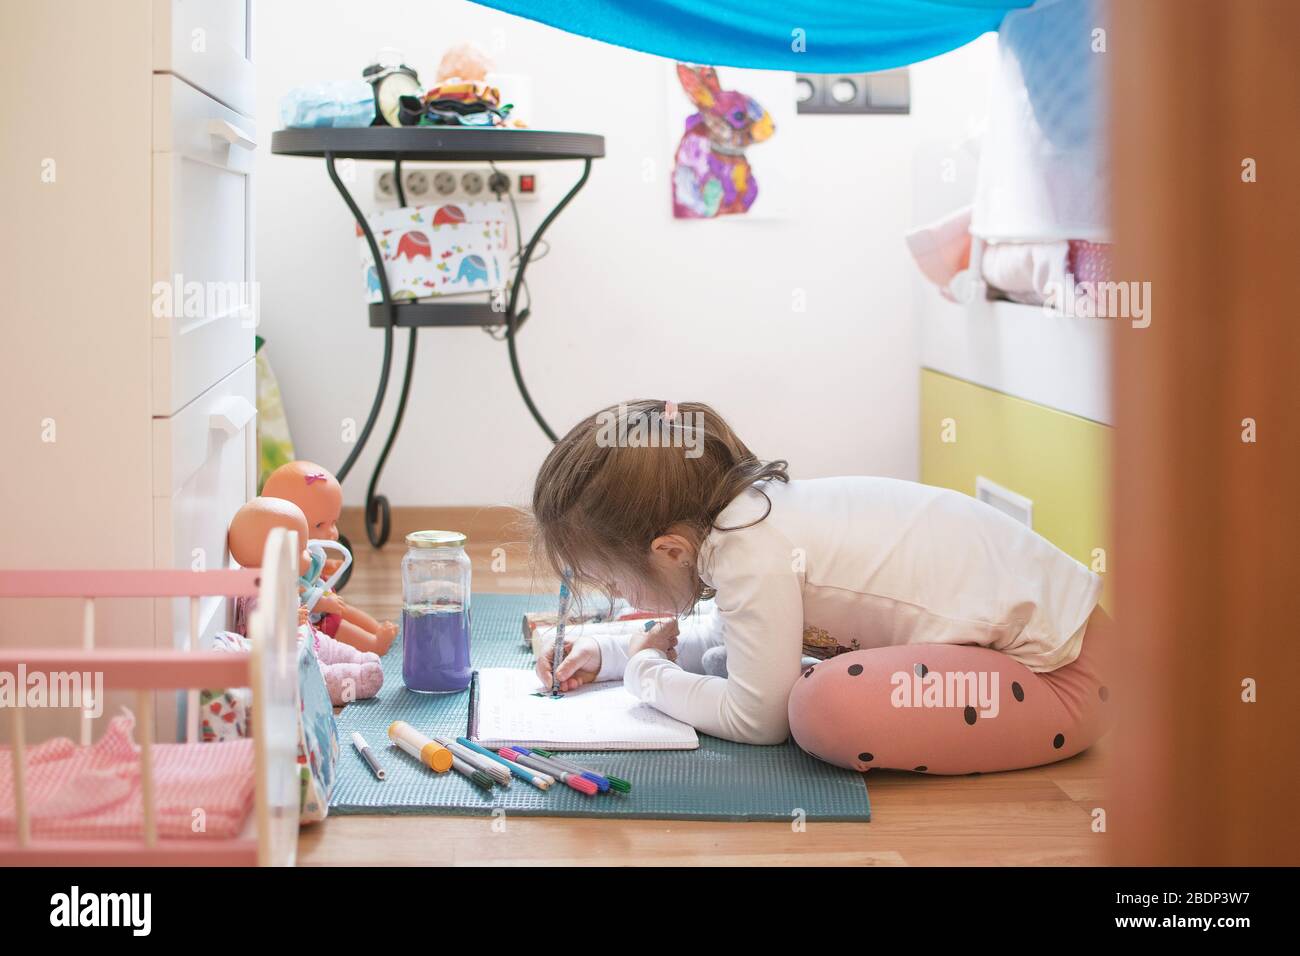 La peinture et l'écriture de fille faire quelques devoirs à la maison pendant l'auto-isolation covid-19. Concept d'éducation à la maison avec espace de copie vide pour le texte de l'éditeur. Banque D'Images